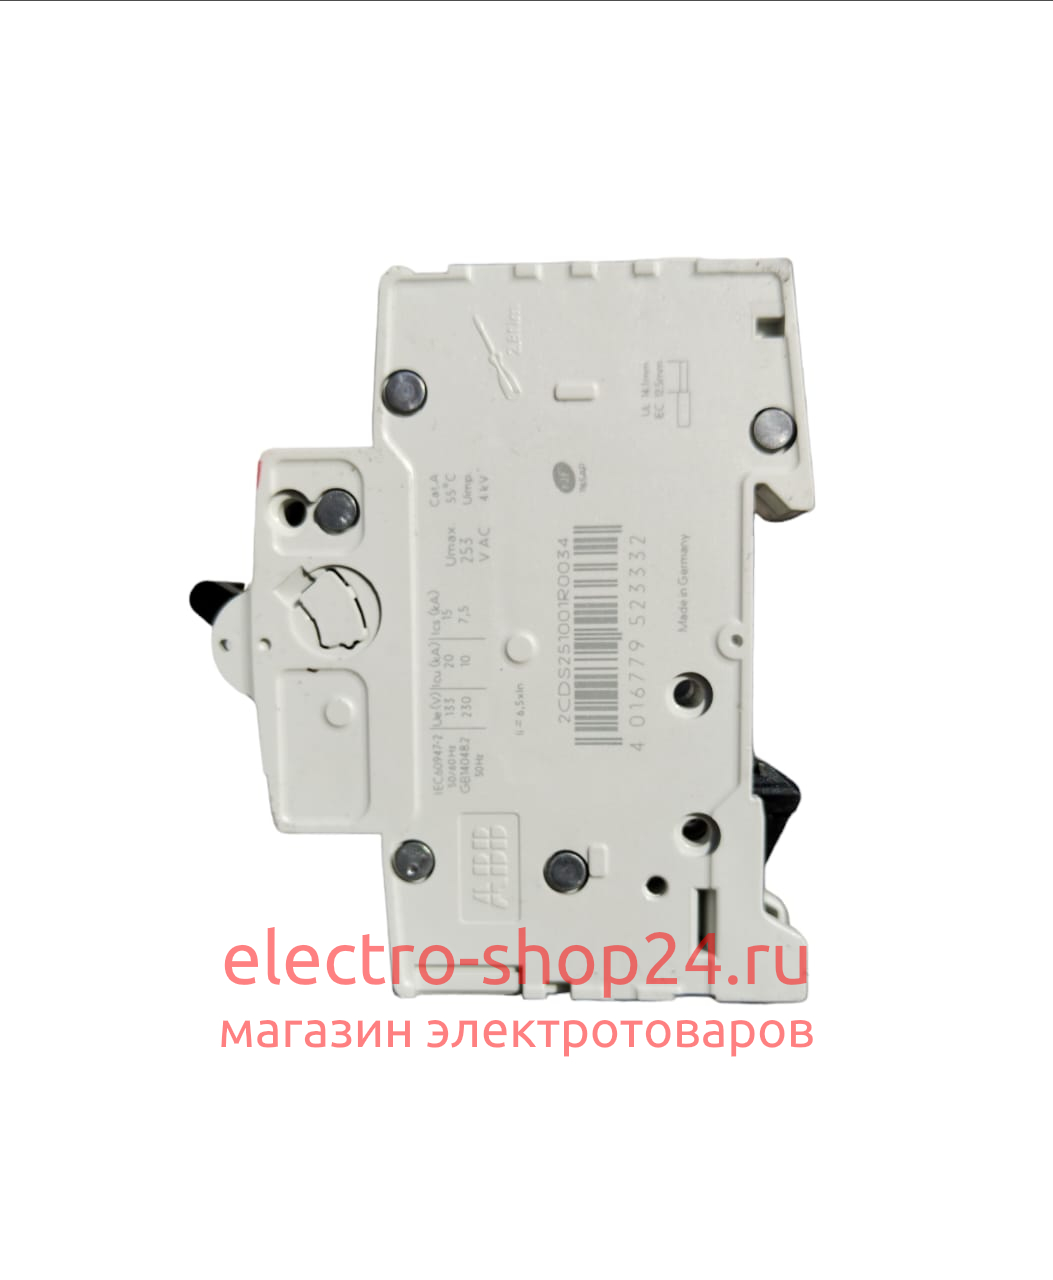 S201 C2 Автоматический выключатель 1-полюсный 2А 6кА (хар-ка C) ABB 2CDS251001R0024 2CDS251001R0024 - магазин электротехники Electroshop